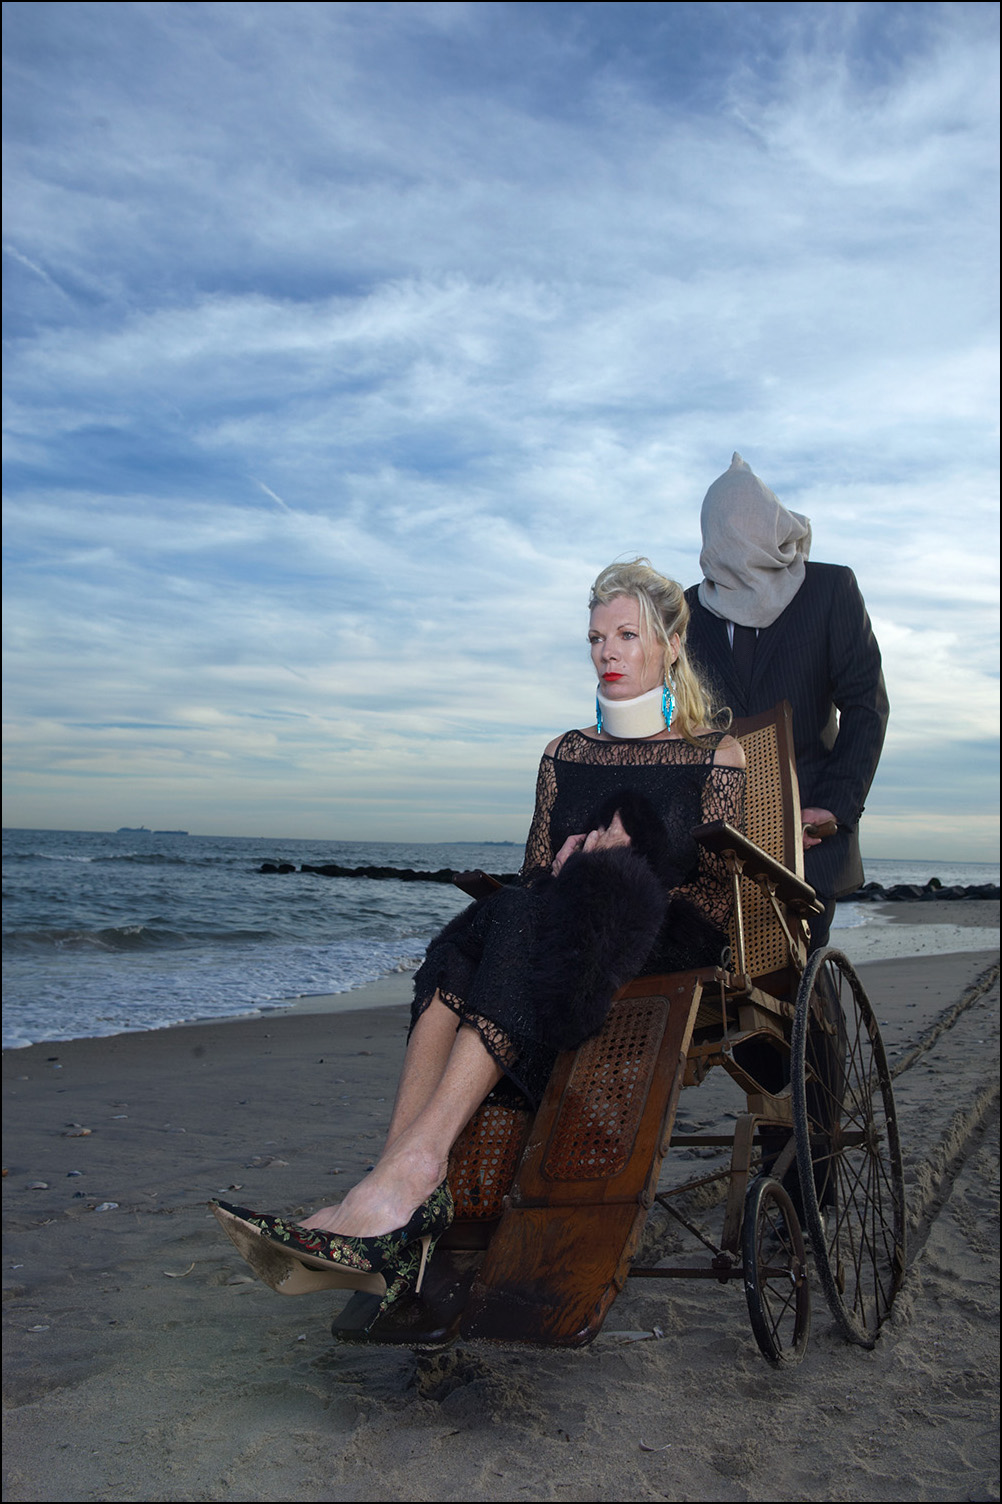   Countess Mara at the Beach, 2010  